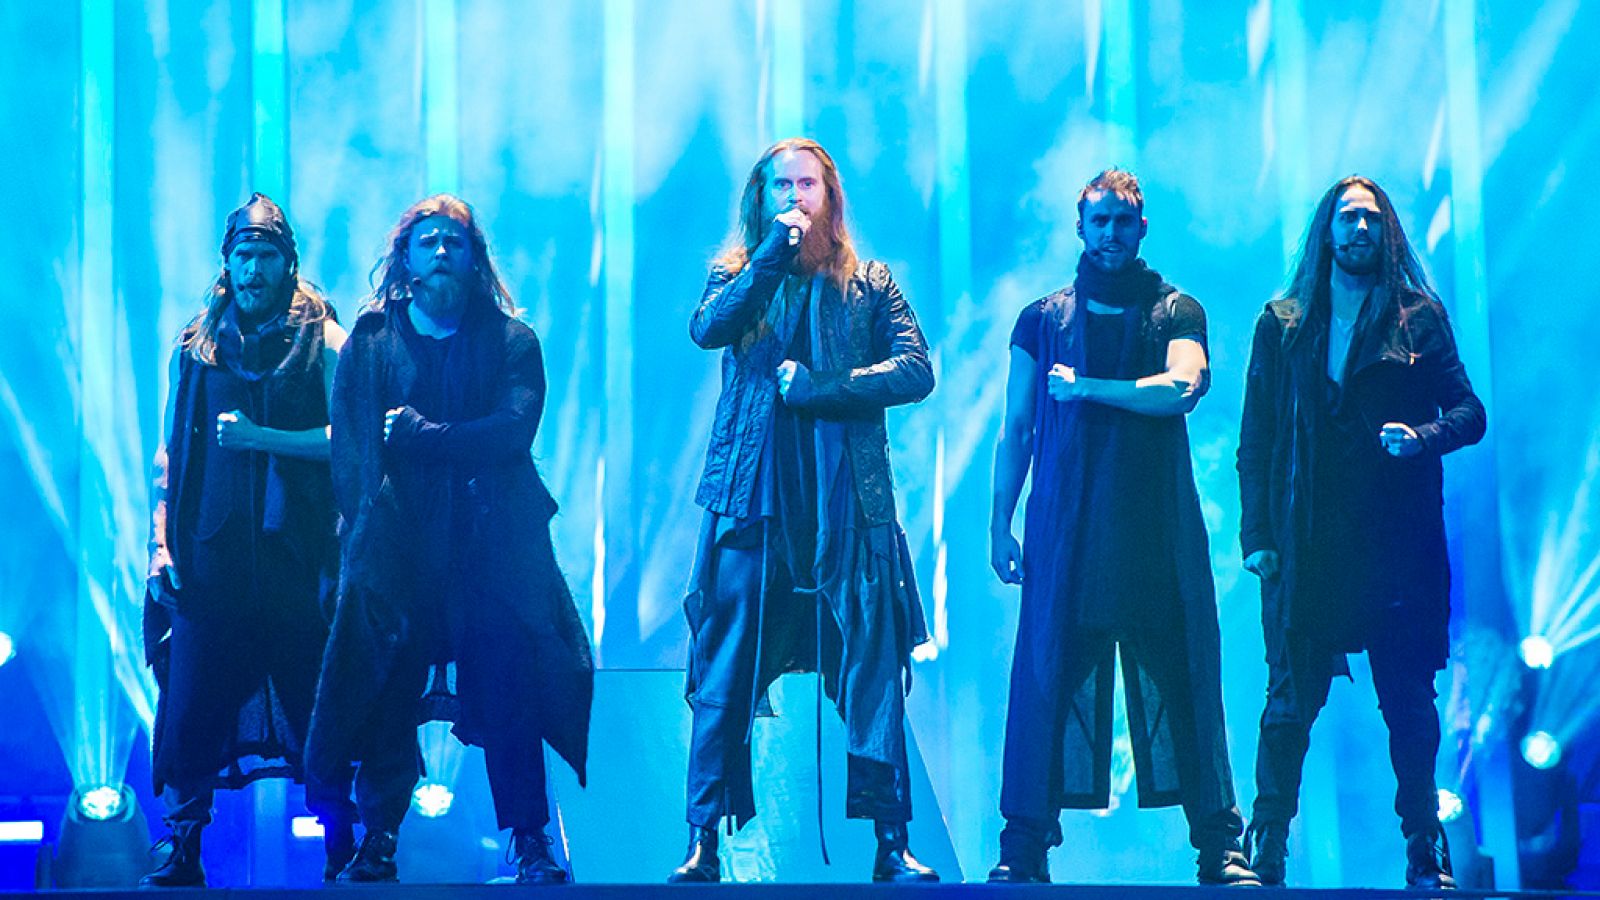  Eurovisión - Dinamarca: Rasmussen canta "Higher Ground" en la final de Eurovisión 2018